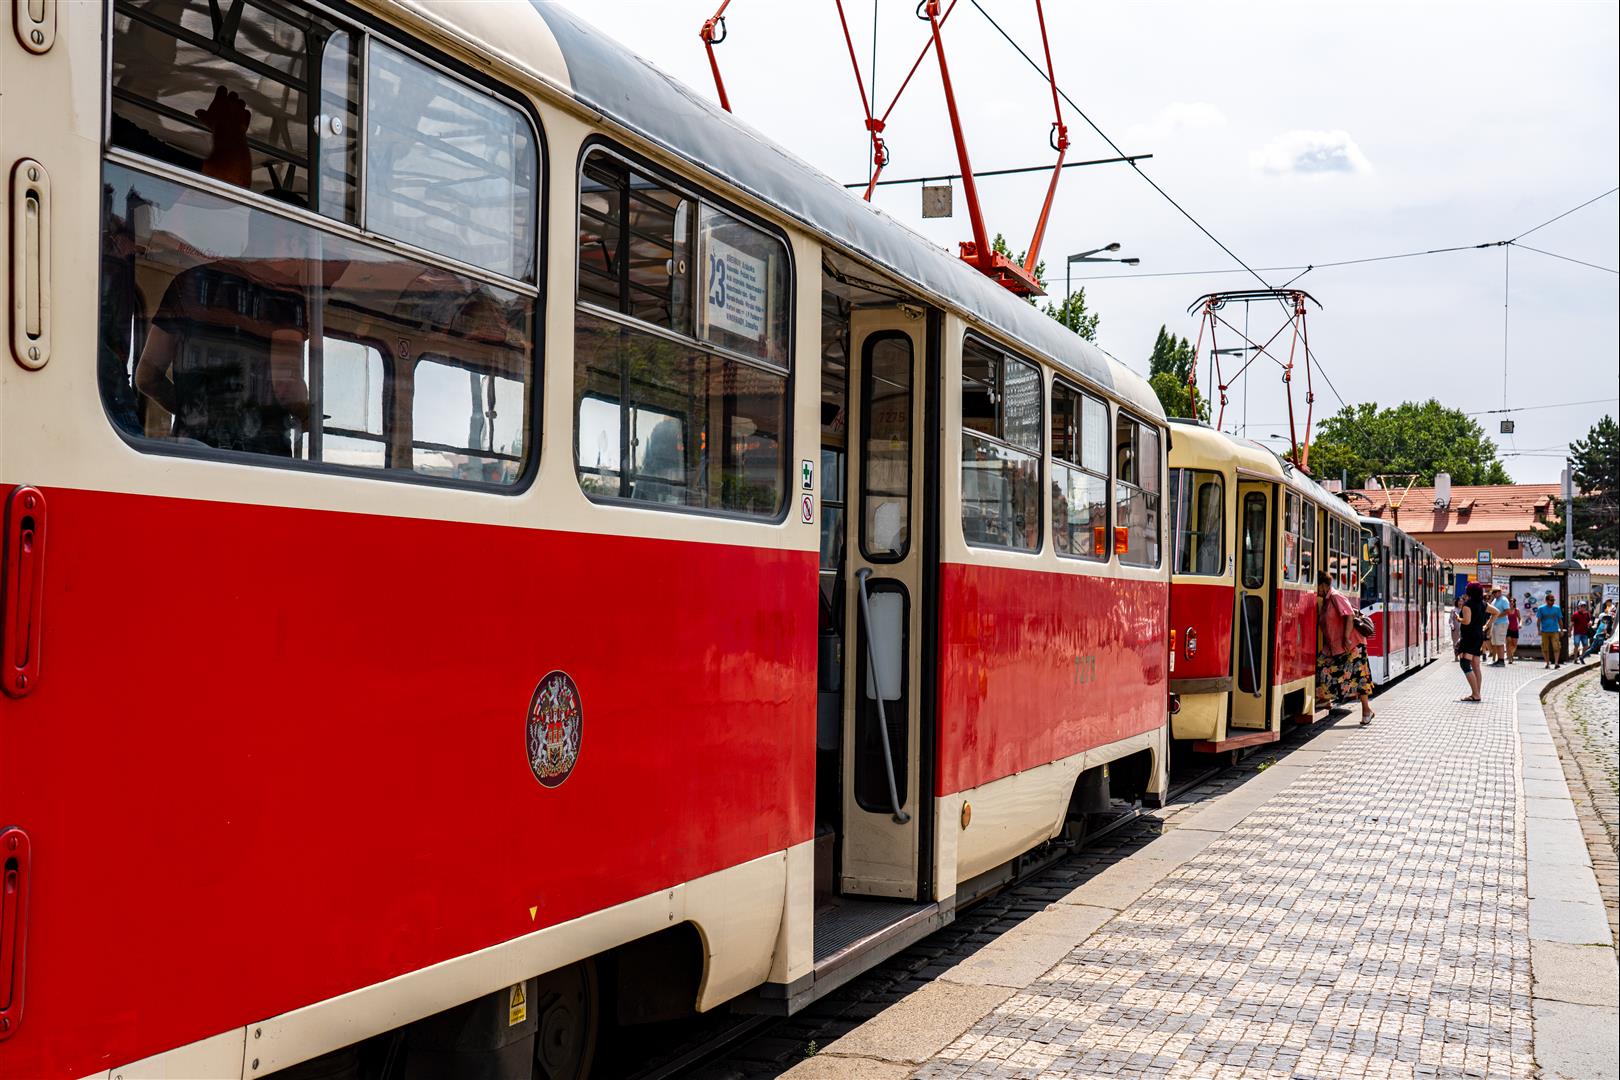 [捷克/布拉格] 布拉格交通 ，購買車票搭乘輕軌 Trams，運用 Google Map 玩遍布拉格